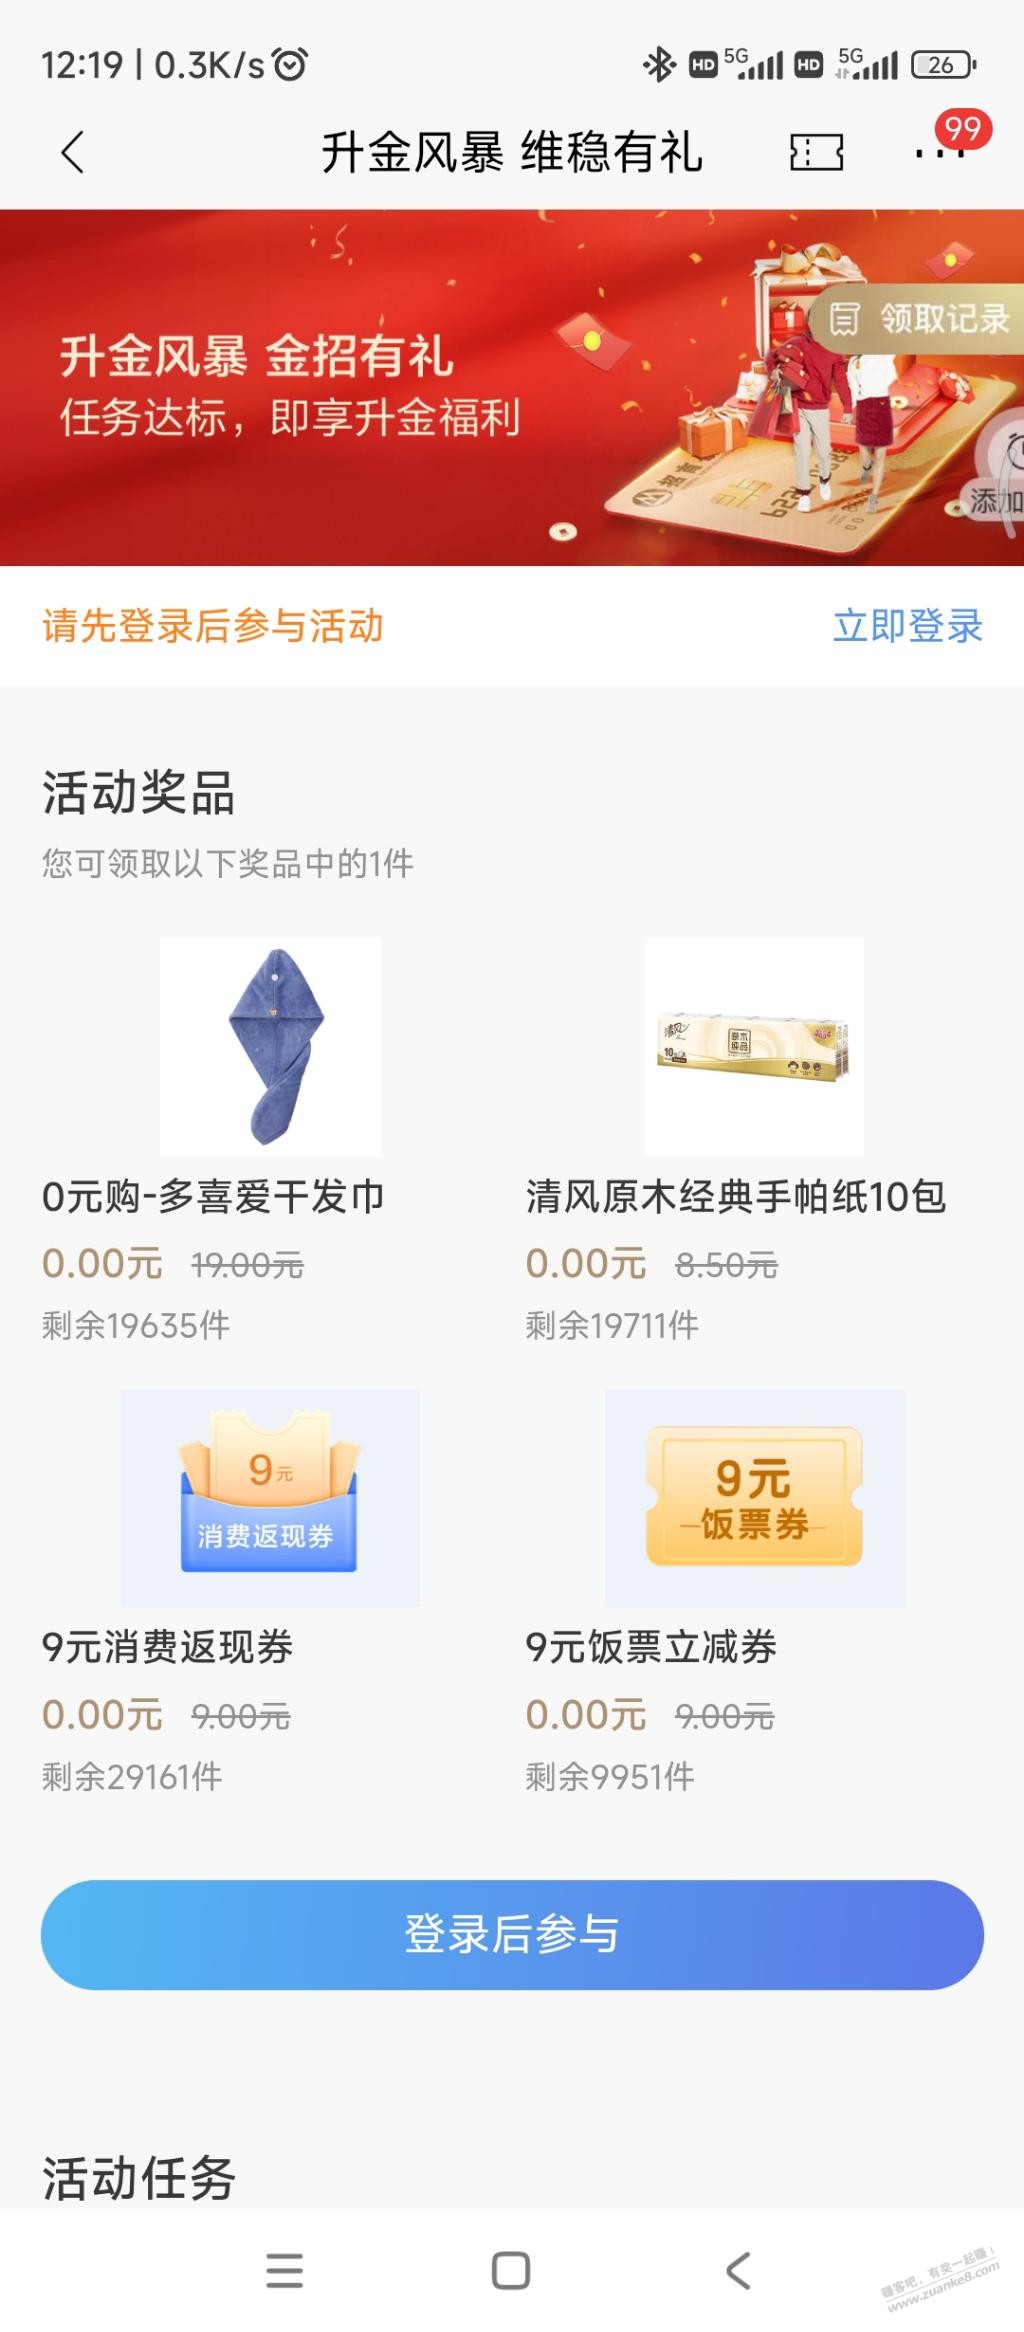 招商银行app 上海 瘦腰